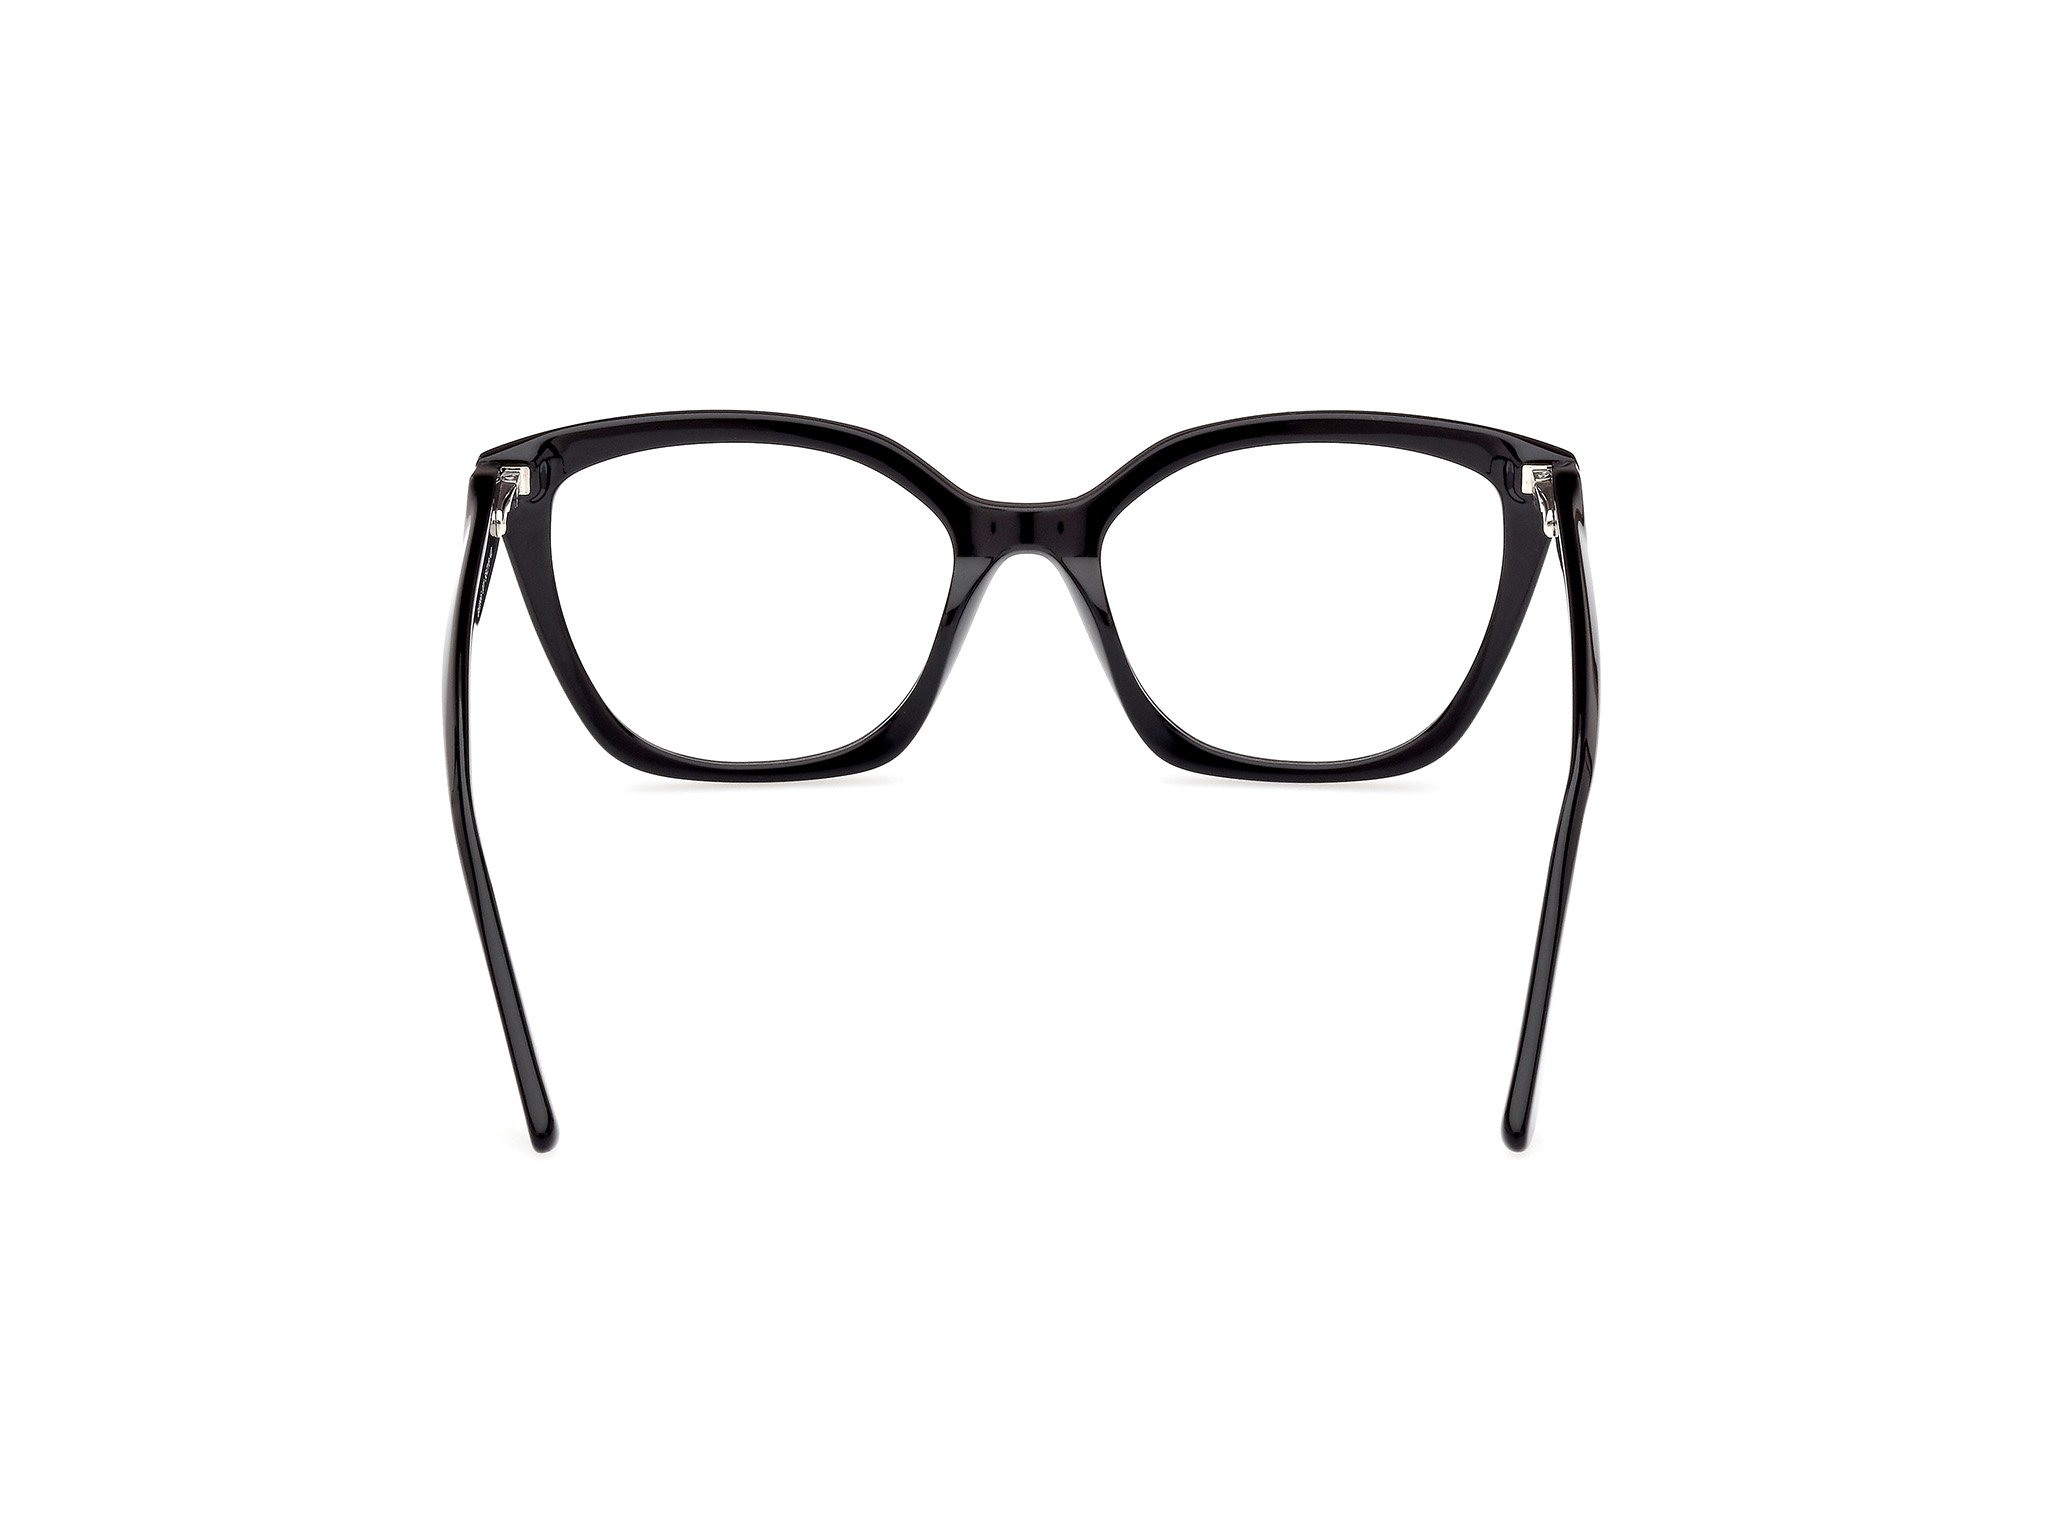 Das Bild zeigt die Korrektionsbrille GU2965 001 von der Marke Guess in schwarz.